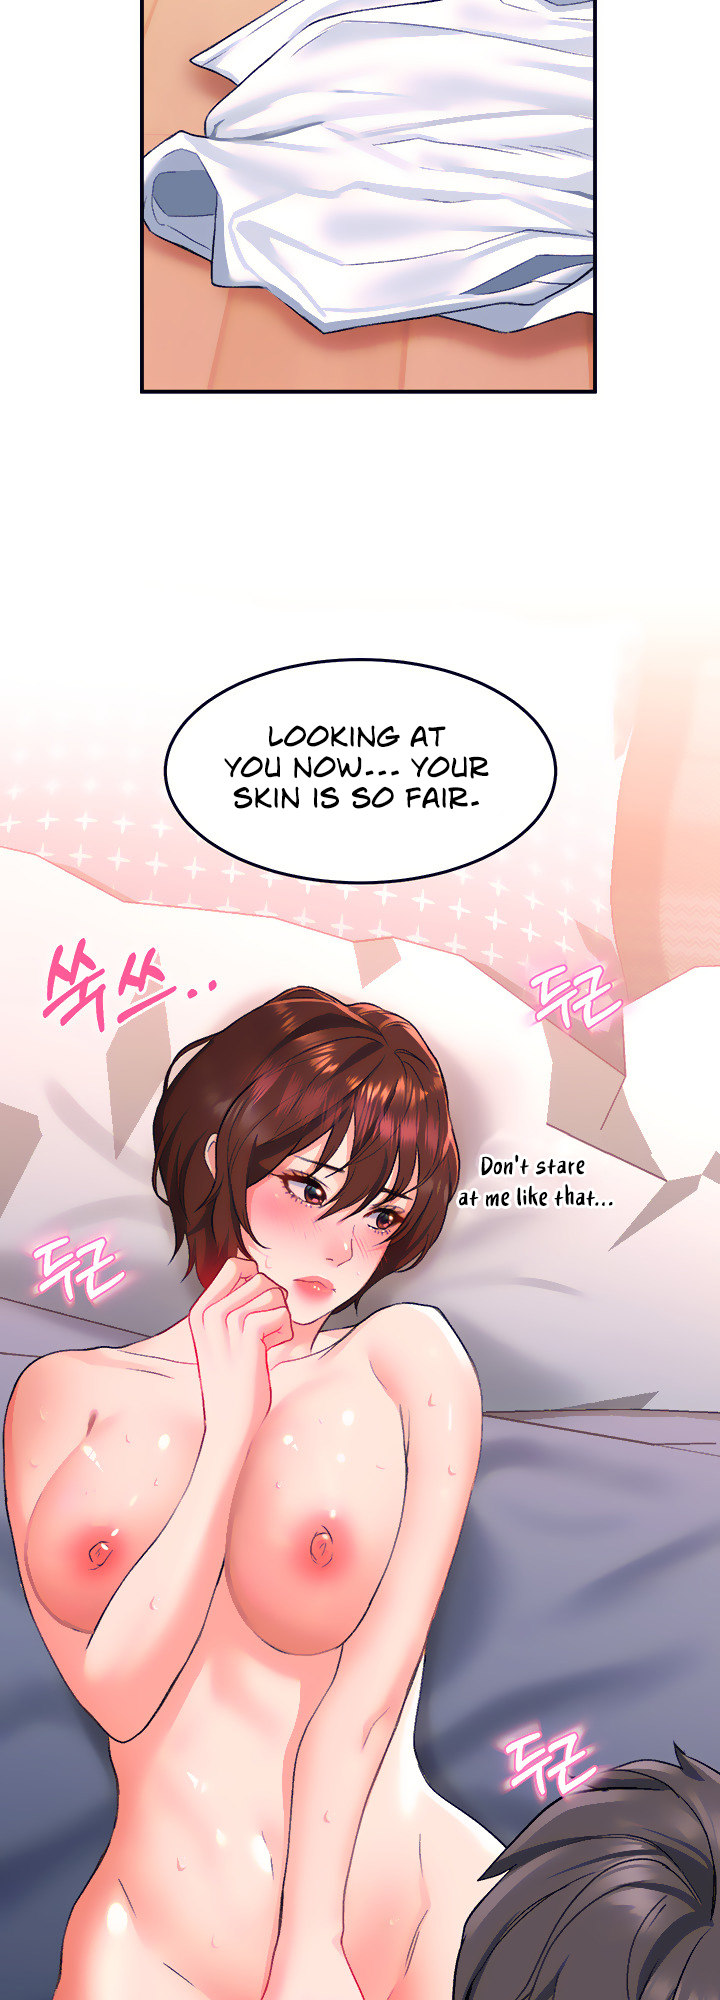 Read manga Unlock Her Heart - Chapter 13 - 36 - ManhwaXXL.com